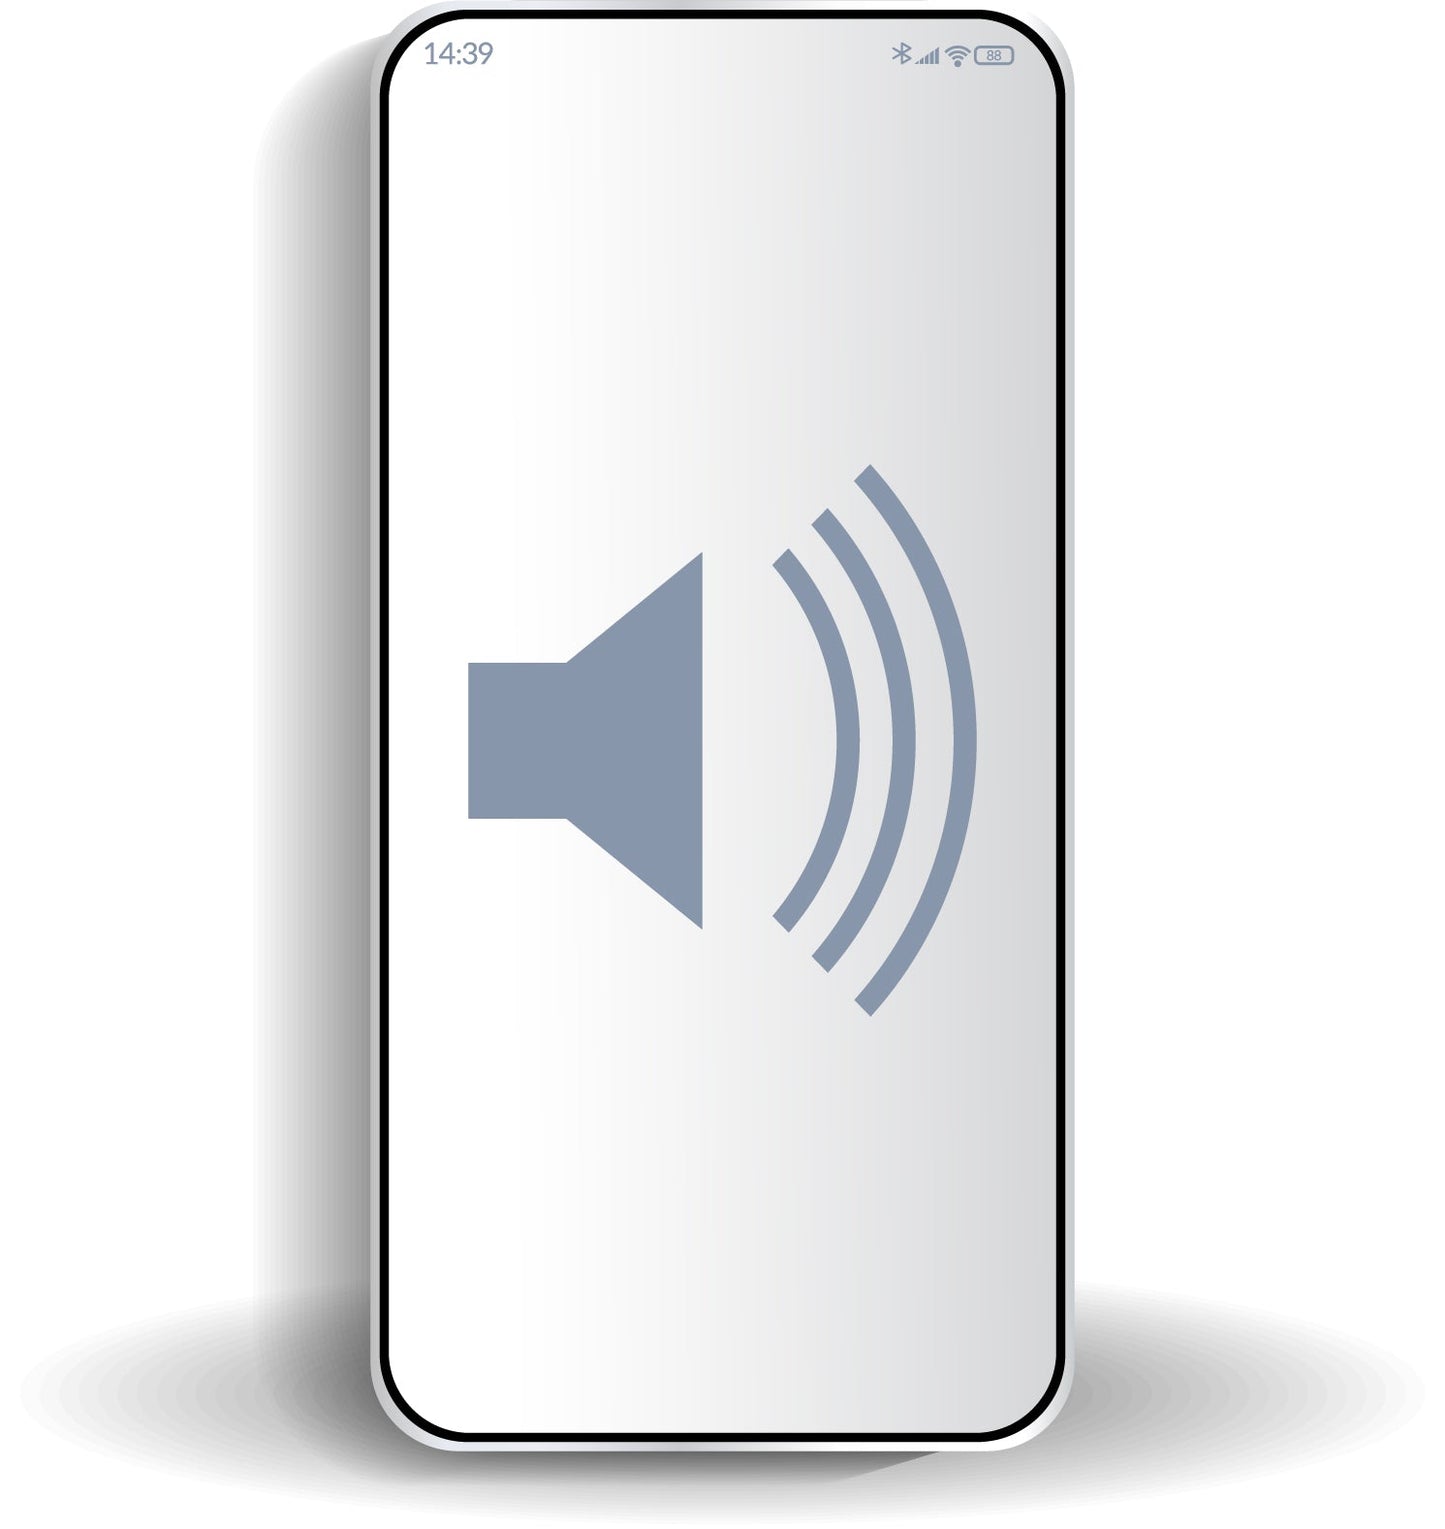 Samsung Galaxy S6 edge Audio Issue Repair.